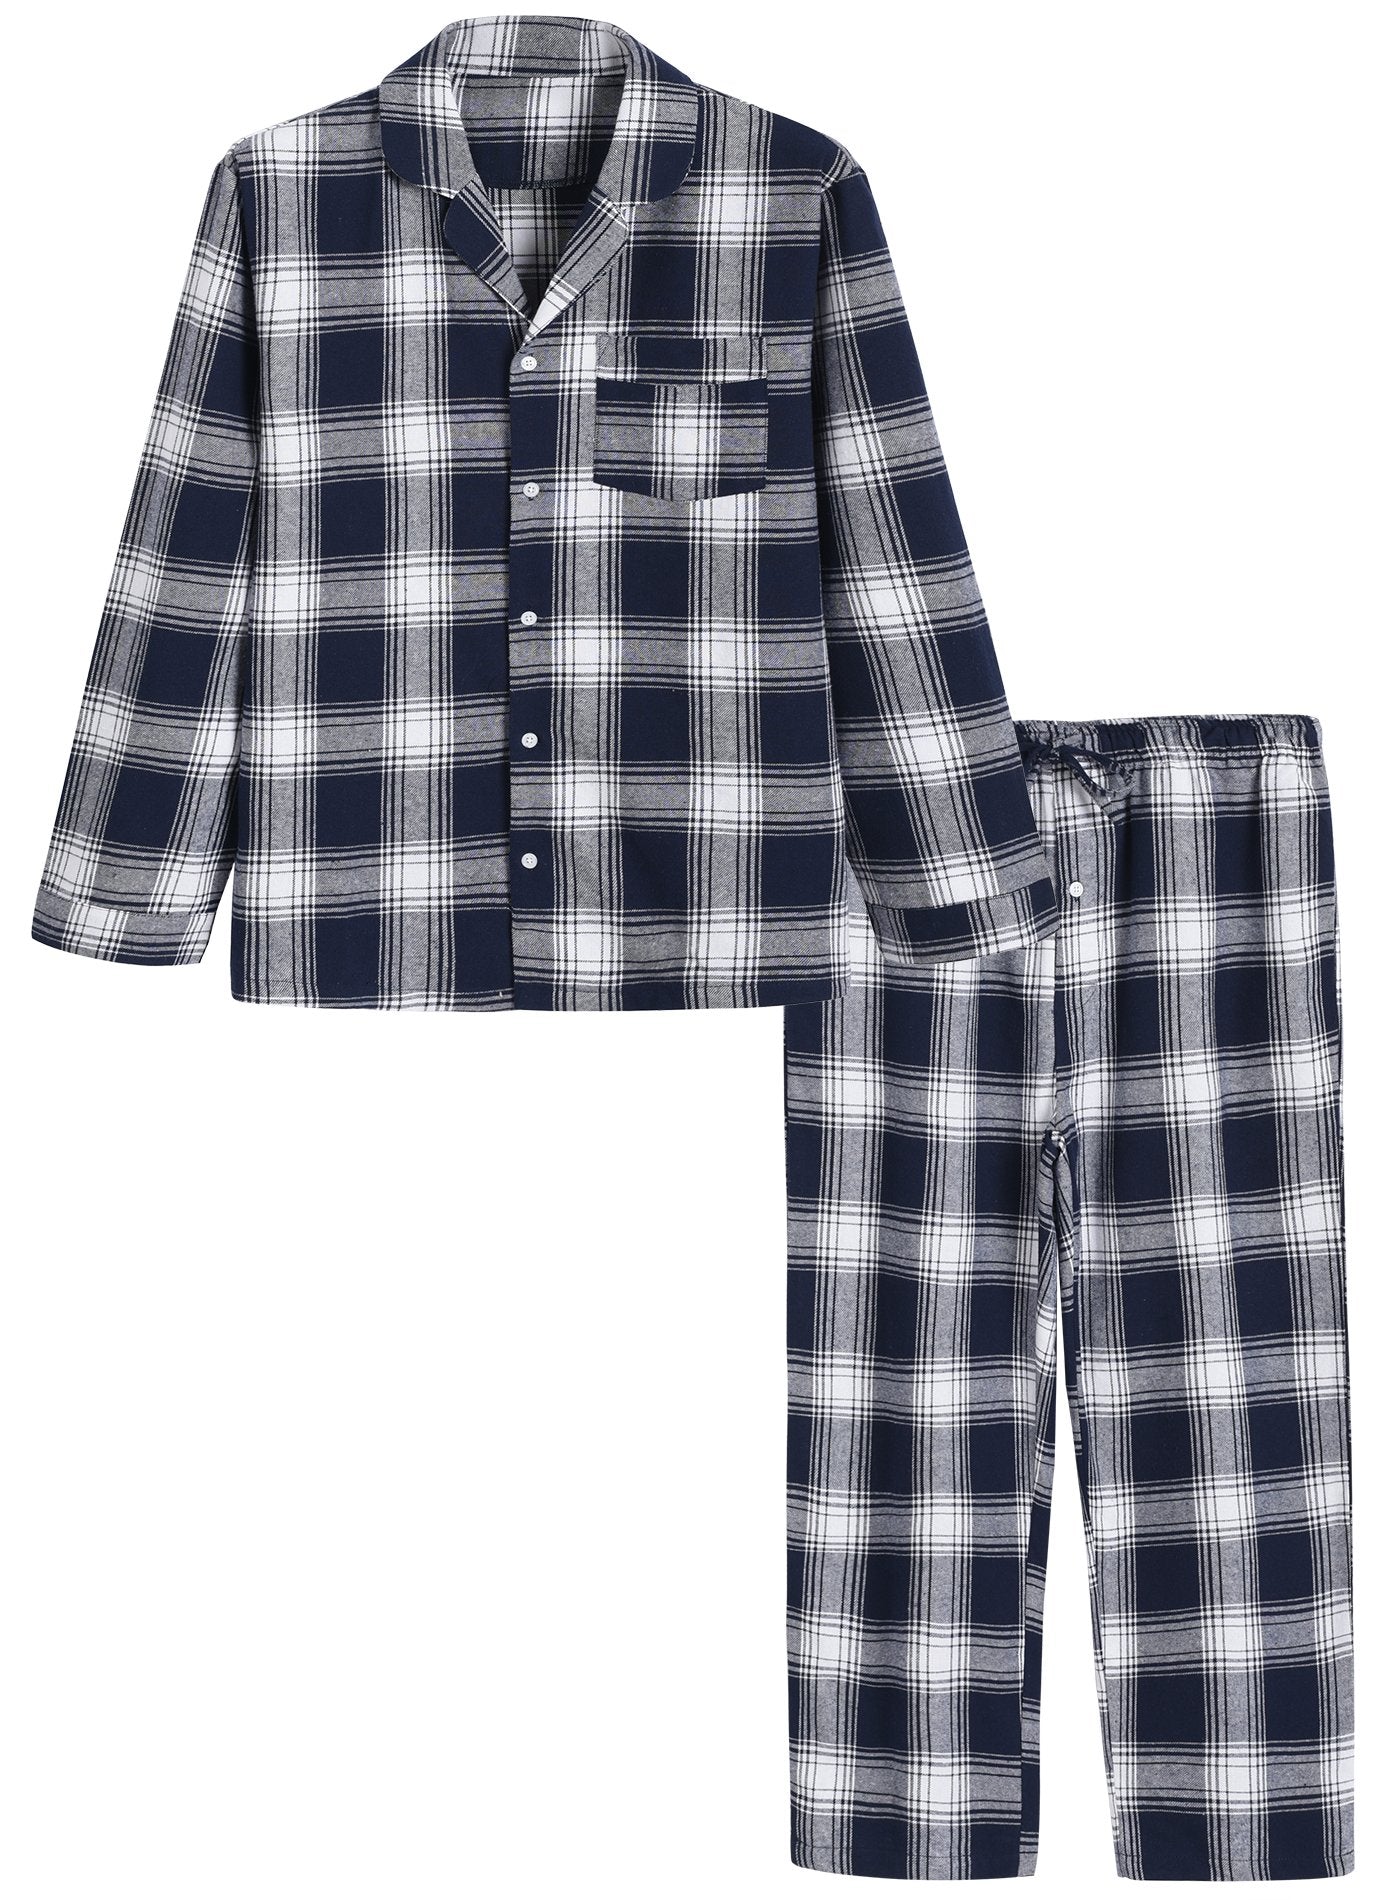 Latuza Men's Cotton Pajamas Set Button Up Shirt and Pants for